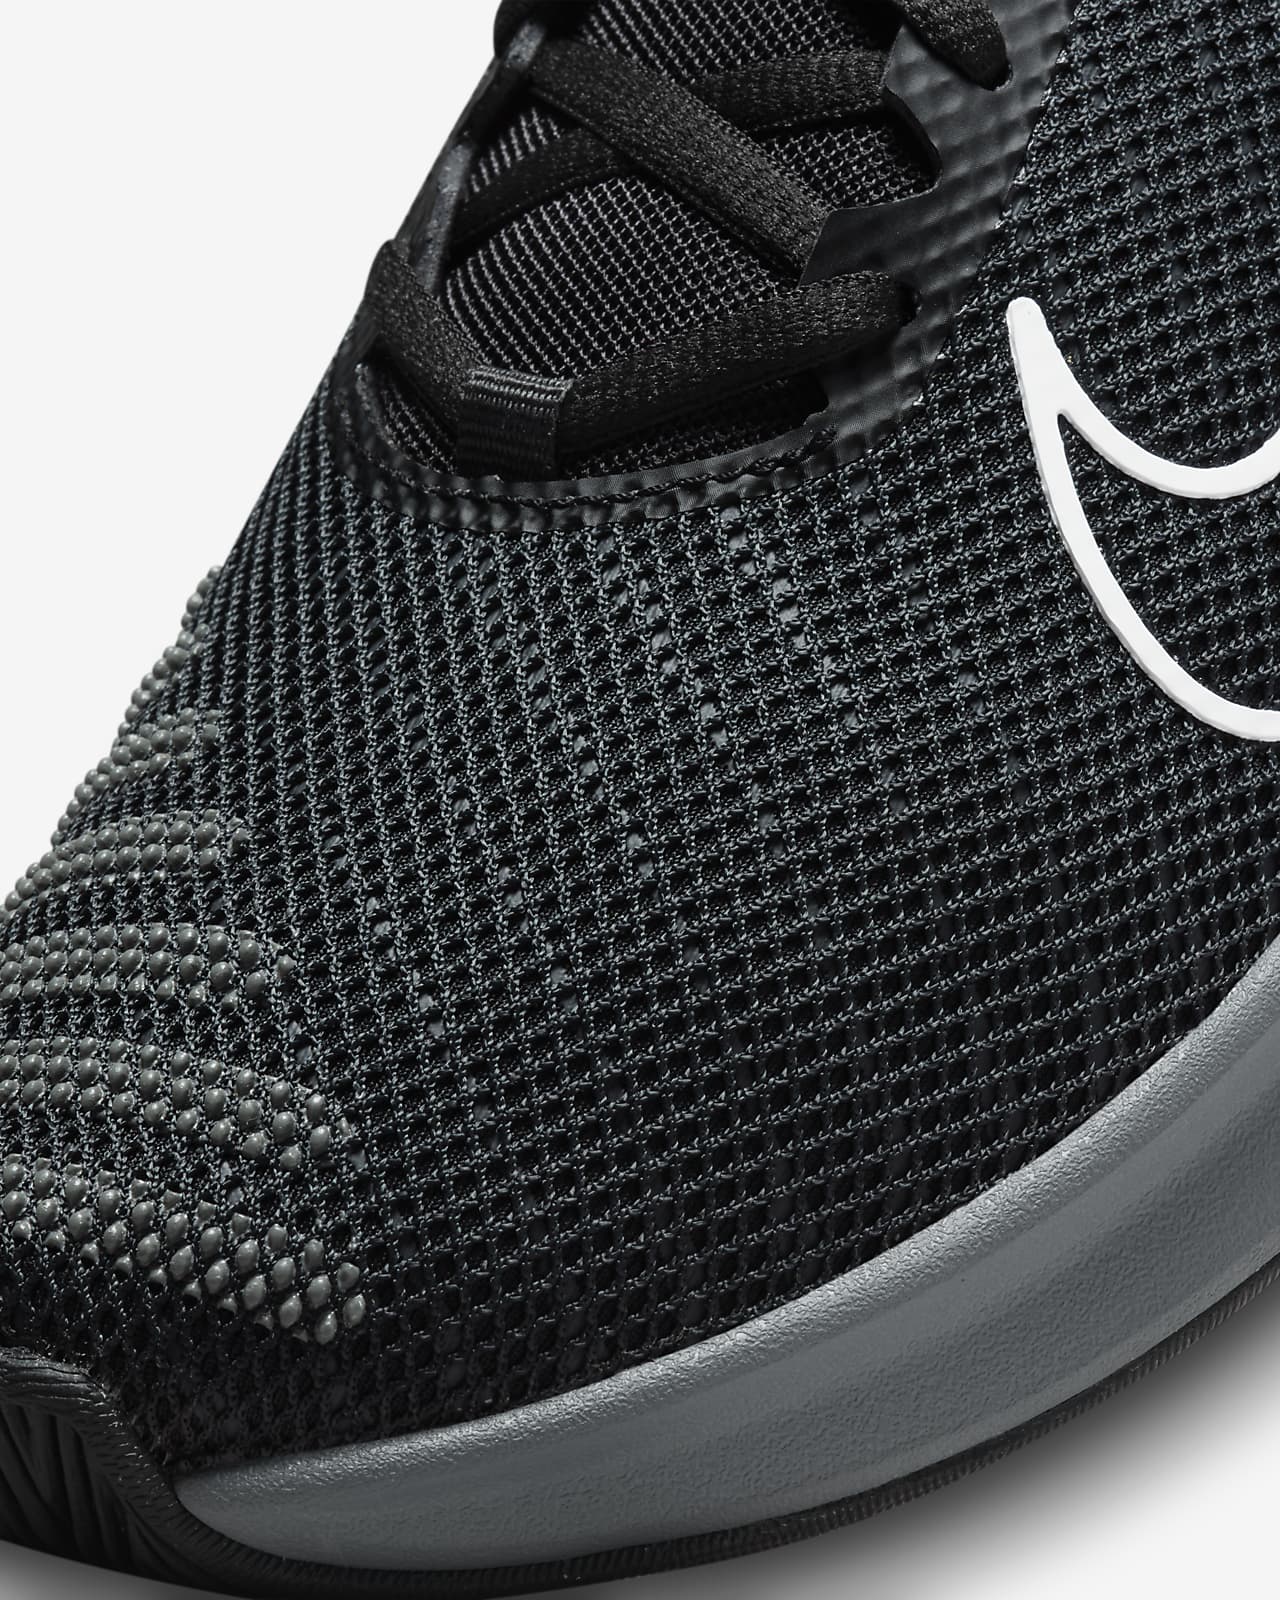 Nike Metcon 9 negro zapatillas cross training hombre